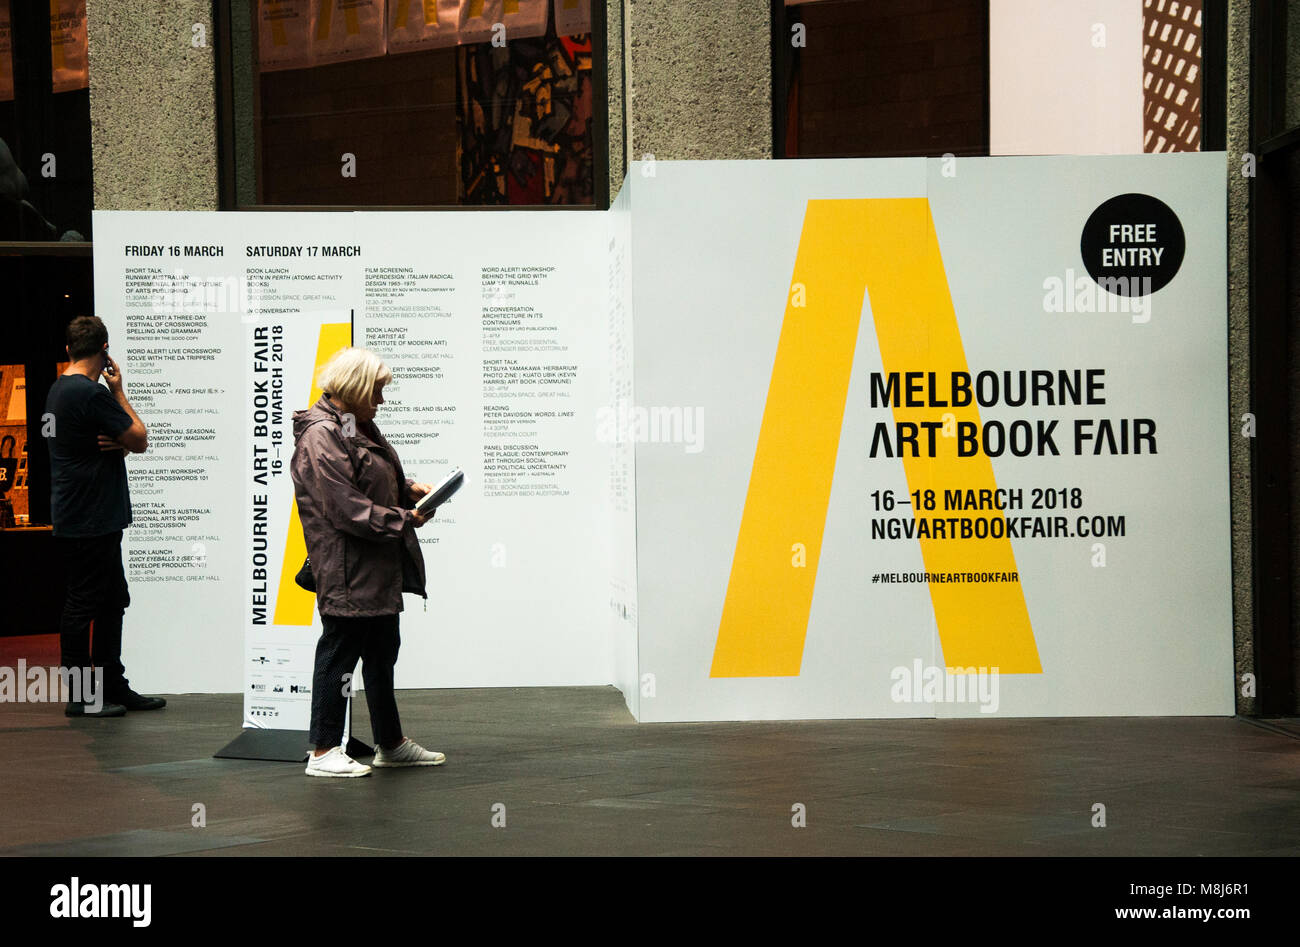 Melbourne Foire du livre d'Art, mars 2018, 'réunissant les éditeurs établis et émergents de la création, des artistes et des écrivains, à la National Gallery of Victoria, Australie Banque D'Images